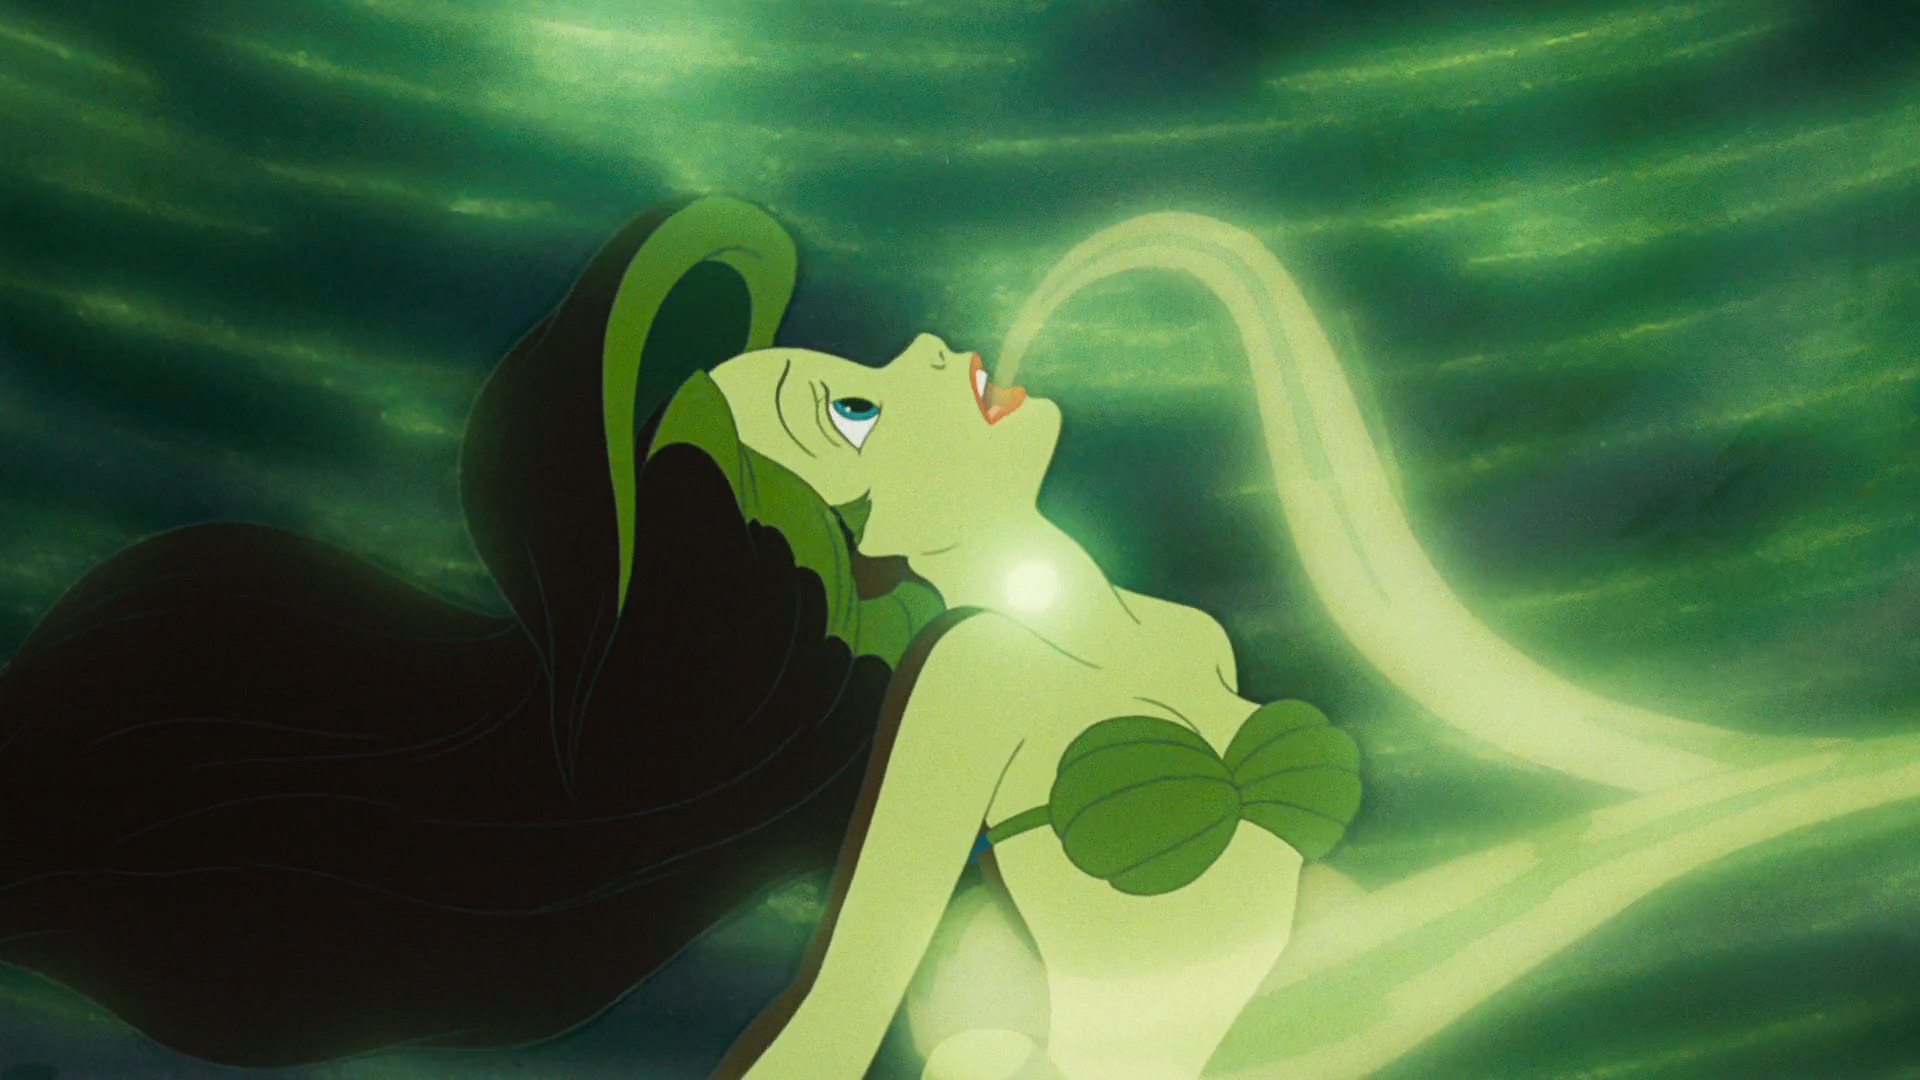 Ariel getting her voice stolen by Ursula. 